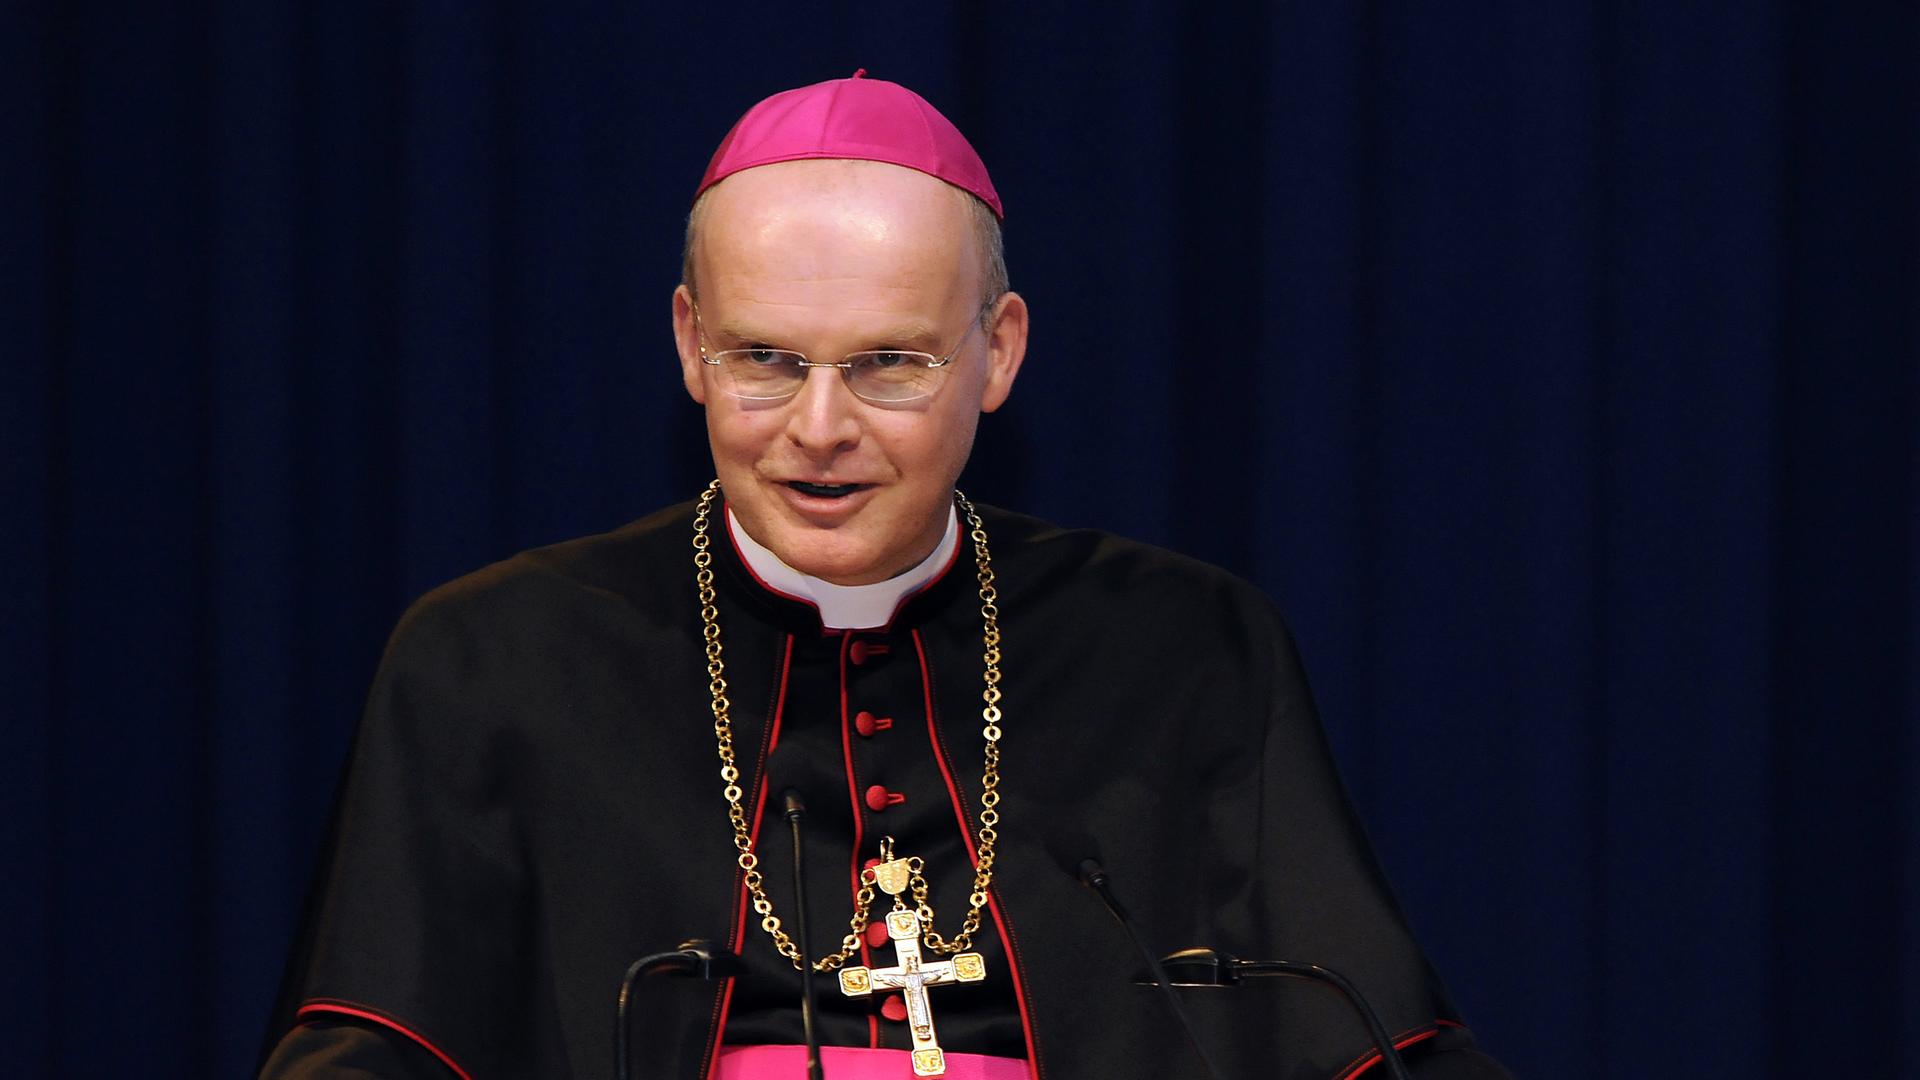 Der Essener Bischof Franz-Josef Overbeck behauptete im April 2010 in einer TV-Talkshow vor Millionenpublikum, Homosexualität sei Sünde.